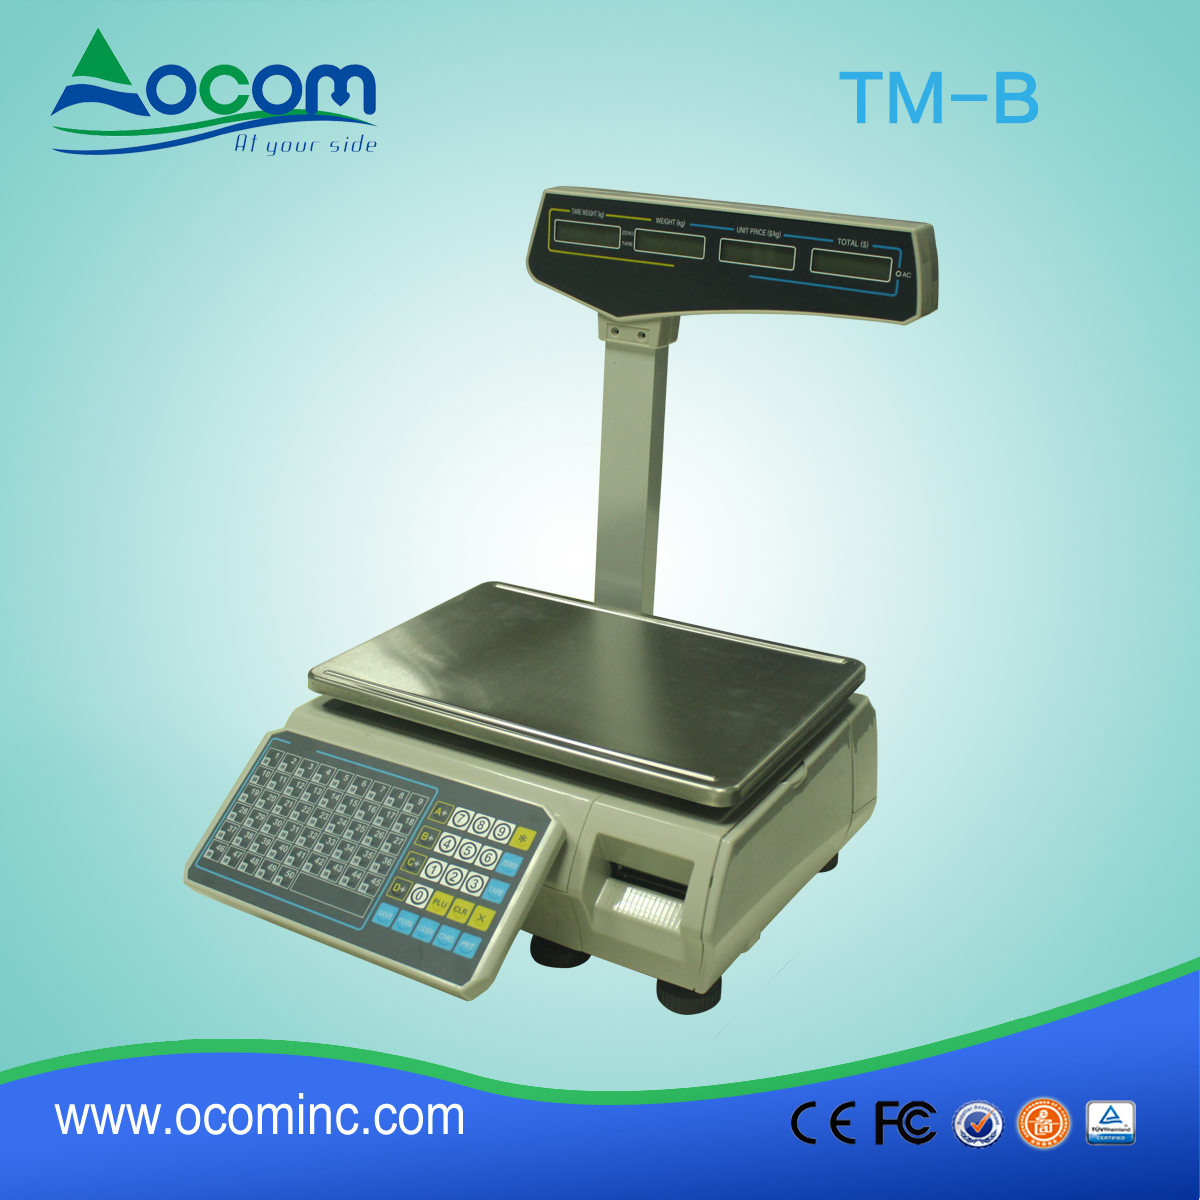 (TM-b) China hizo escala de impresión térmica de código de barras de bajo costo